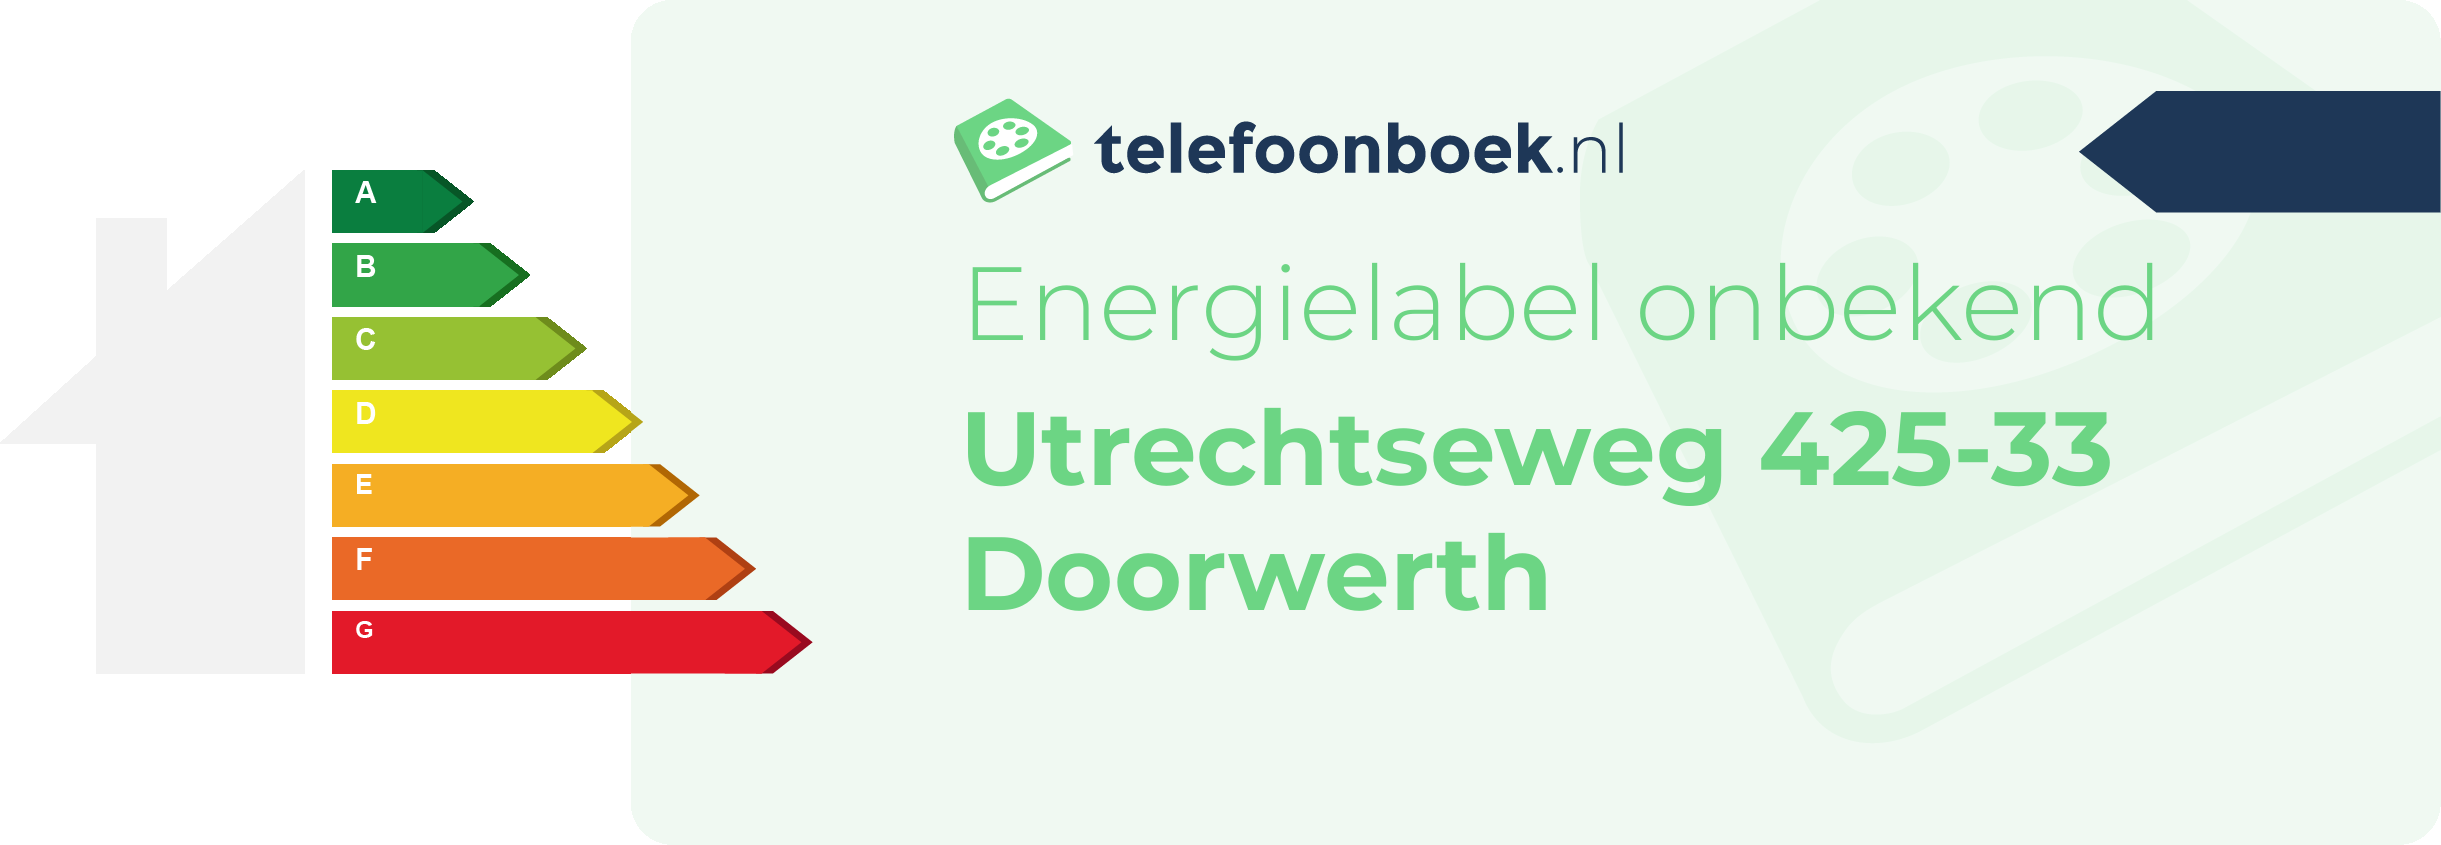 Energielabel Utrechtseweg 425-33 Doorwerth